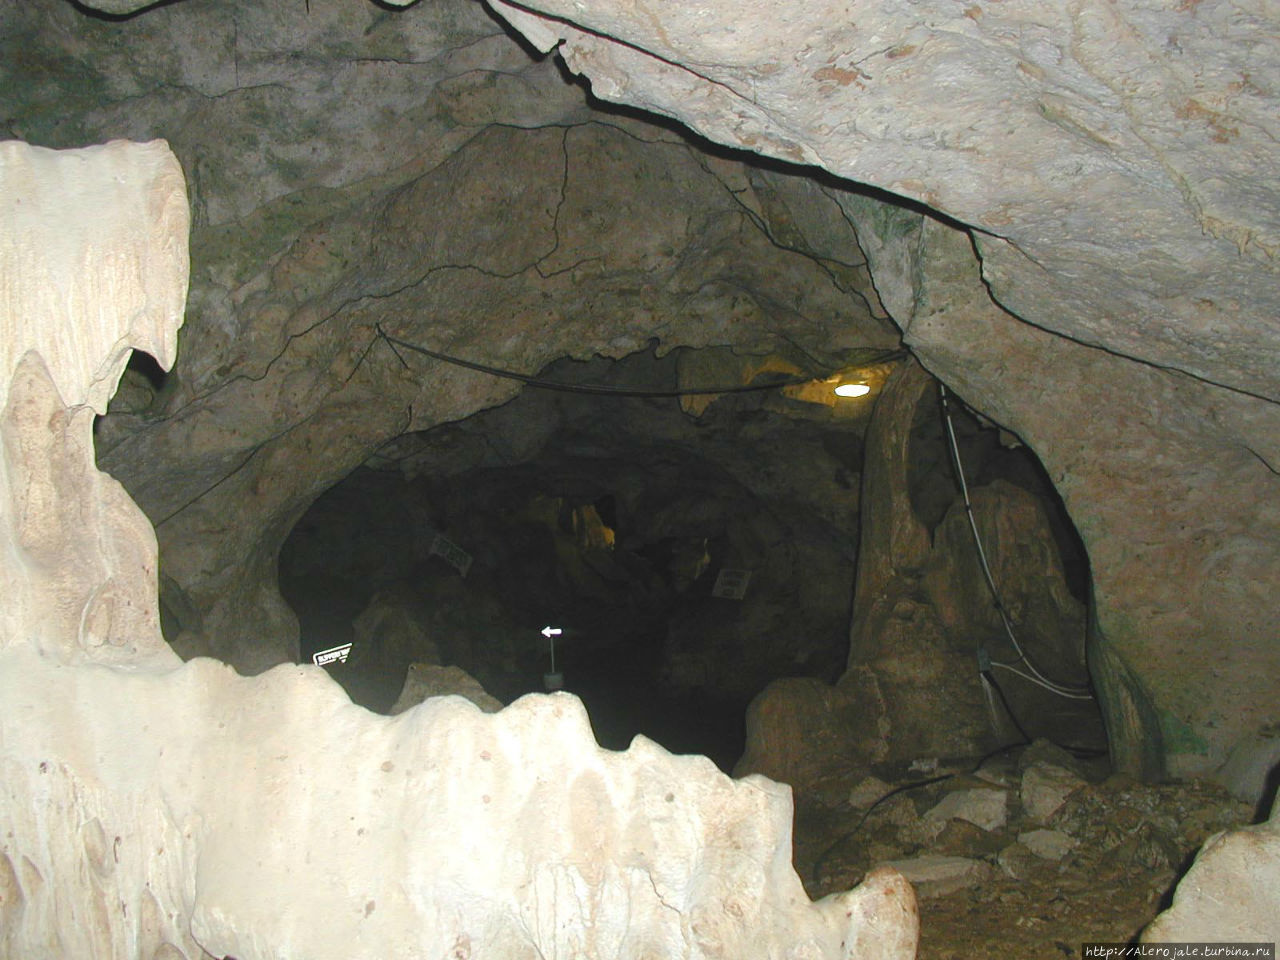 Пещеры на севере острова Монтего-Бей, Ямайка